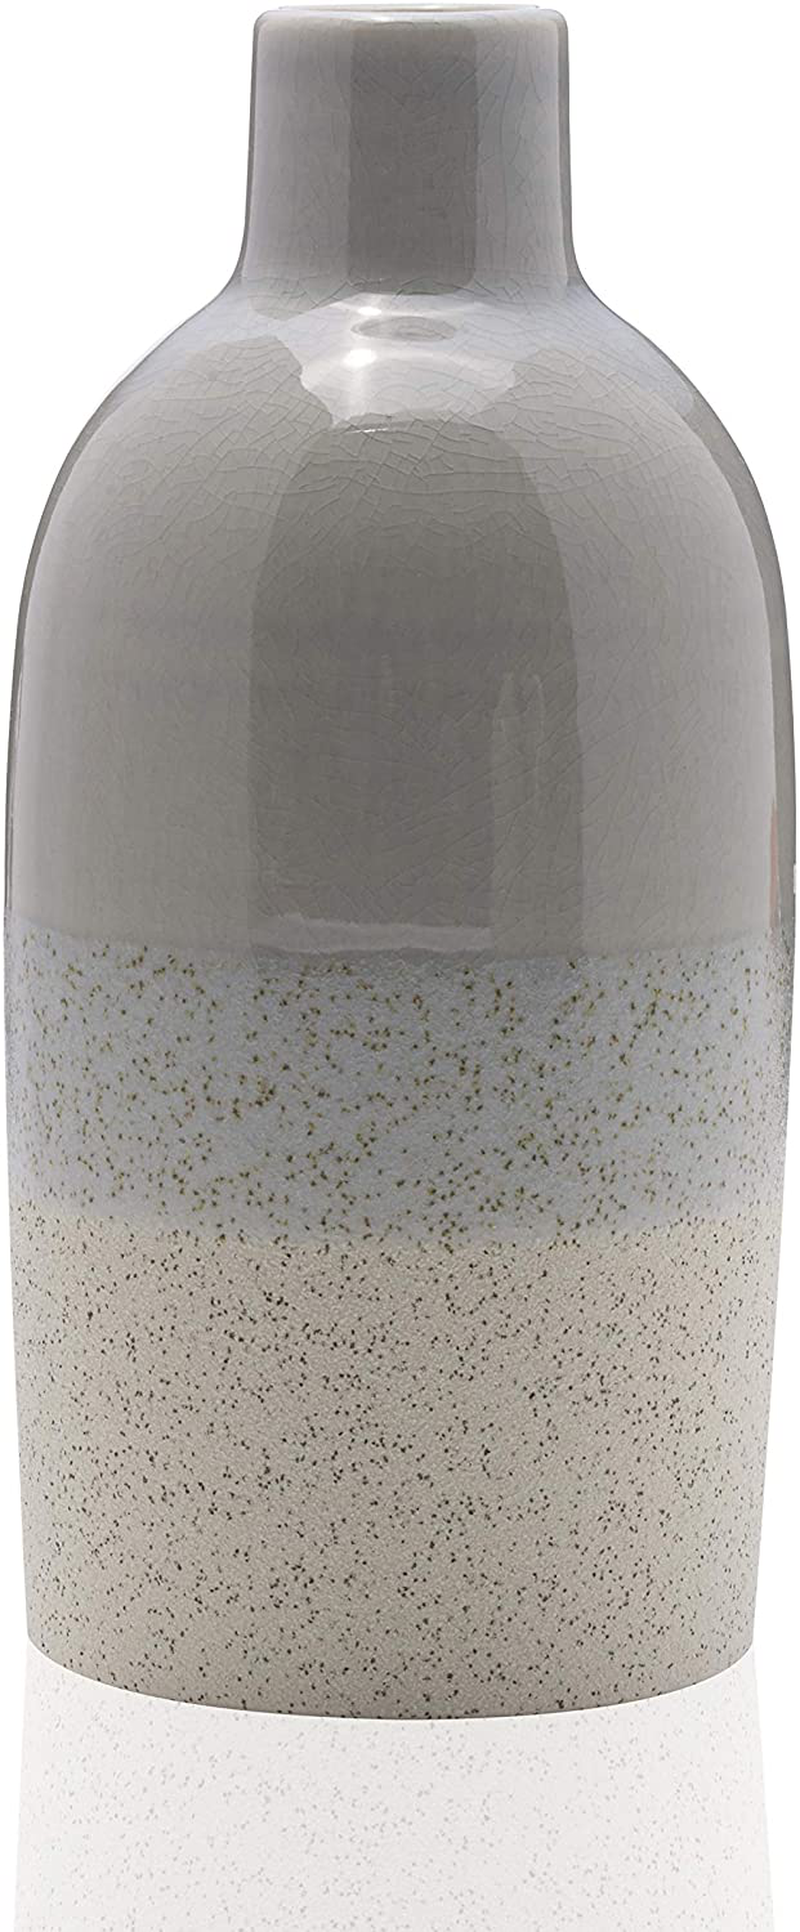 Scott Living Oasis Layered Ceramic Bottle Vase, 9 inch, Light Gray Home & Garden > Decor > Vases Scott Living 9 inch  